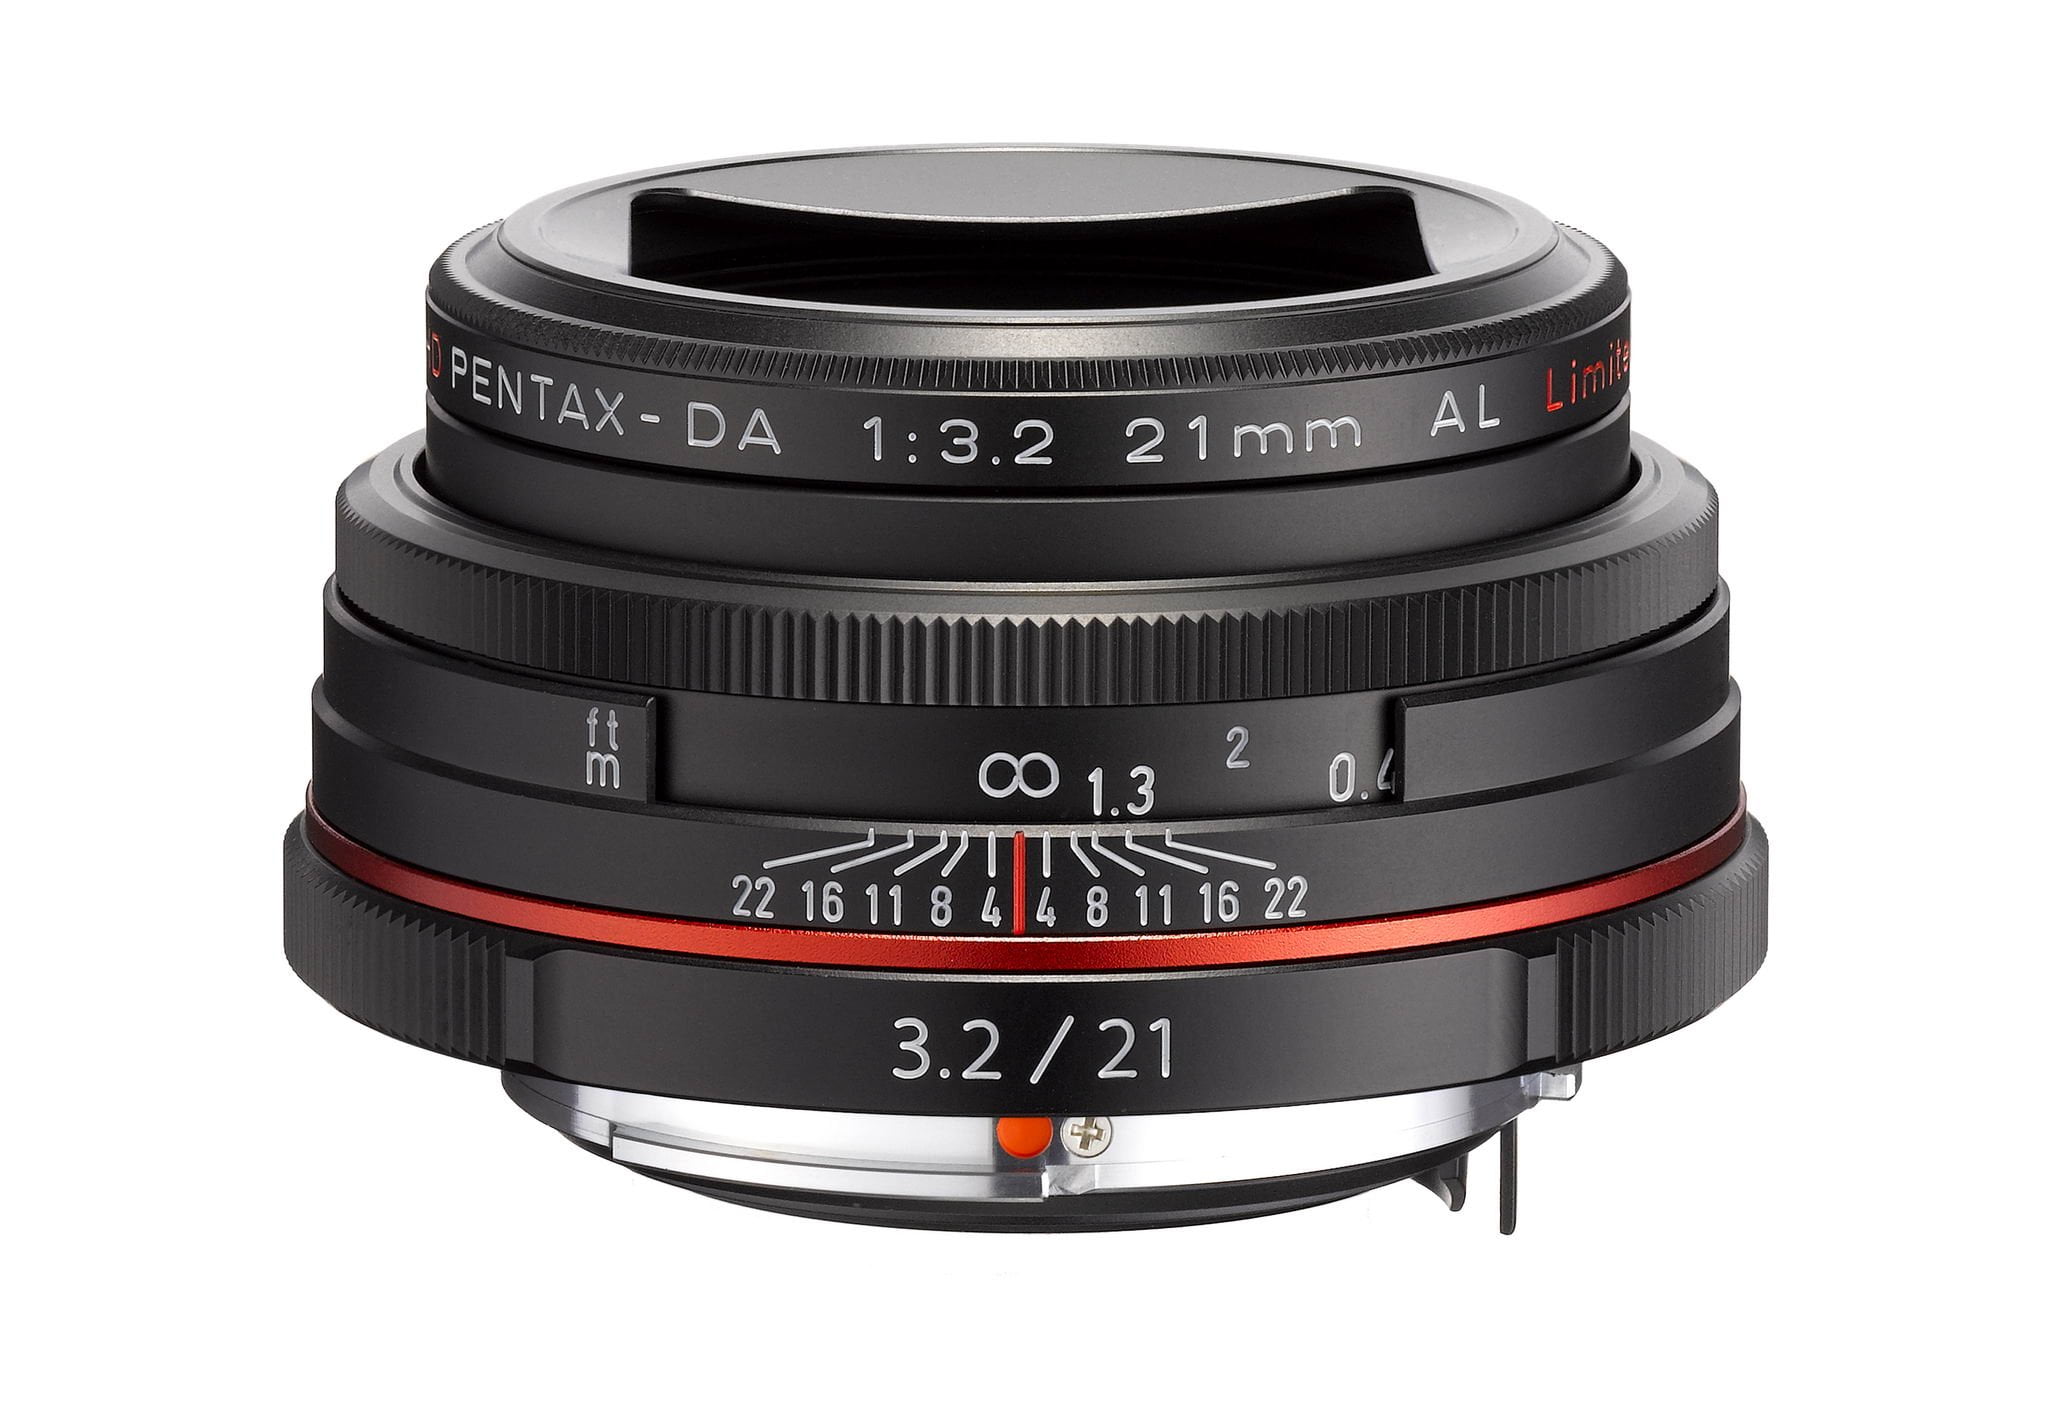 Pentax HD-DA 21mm F3.2AL Limited Lens, Black, - Walmart.com